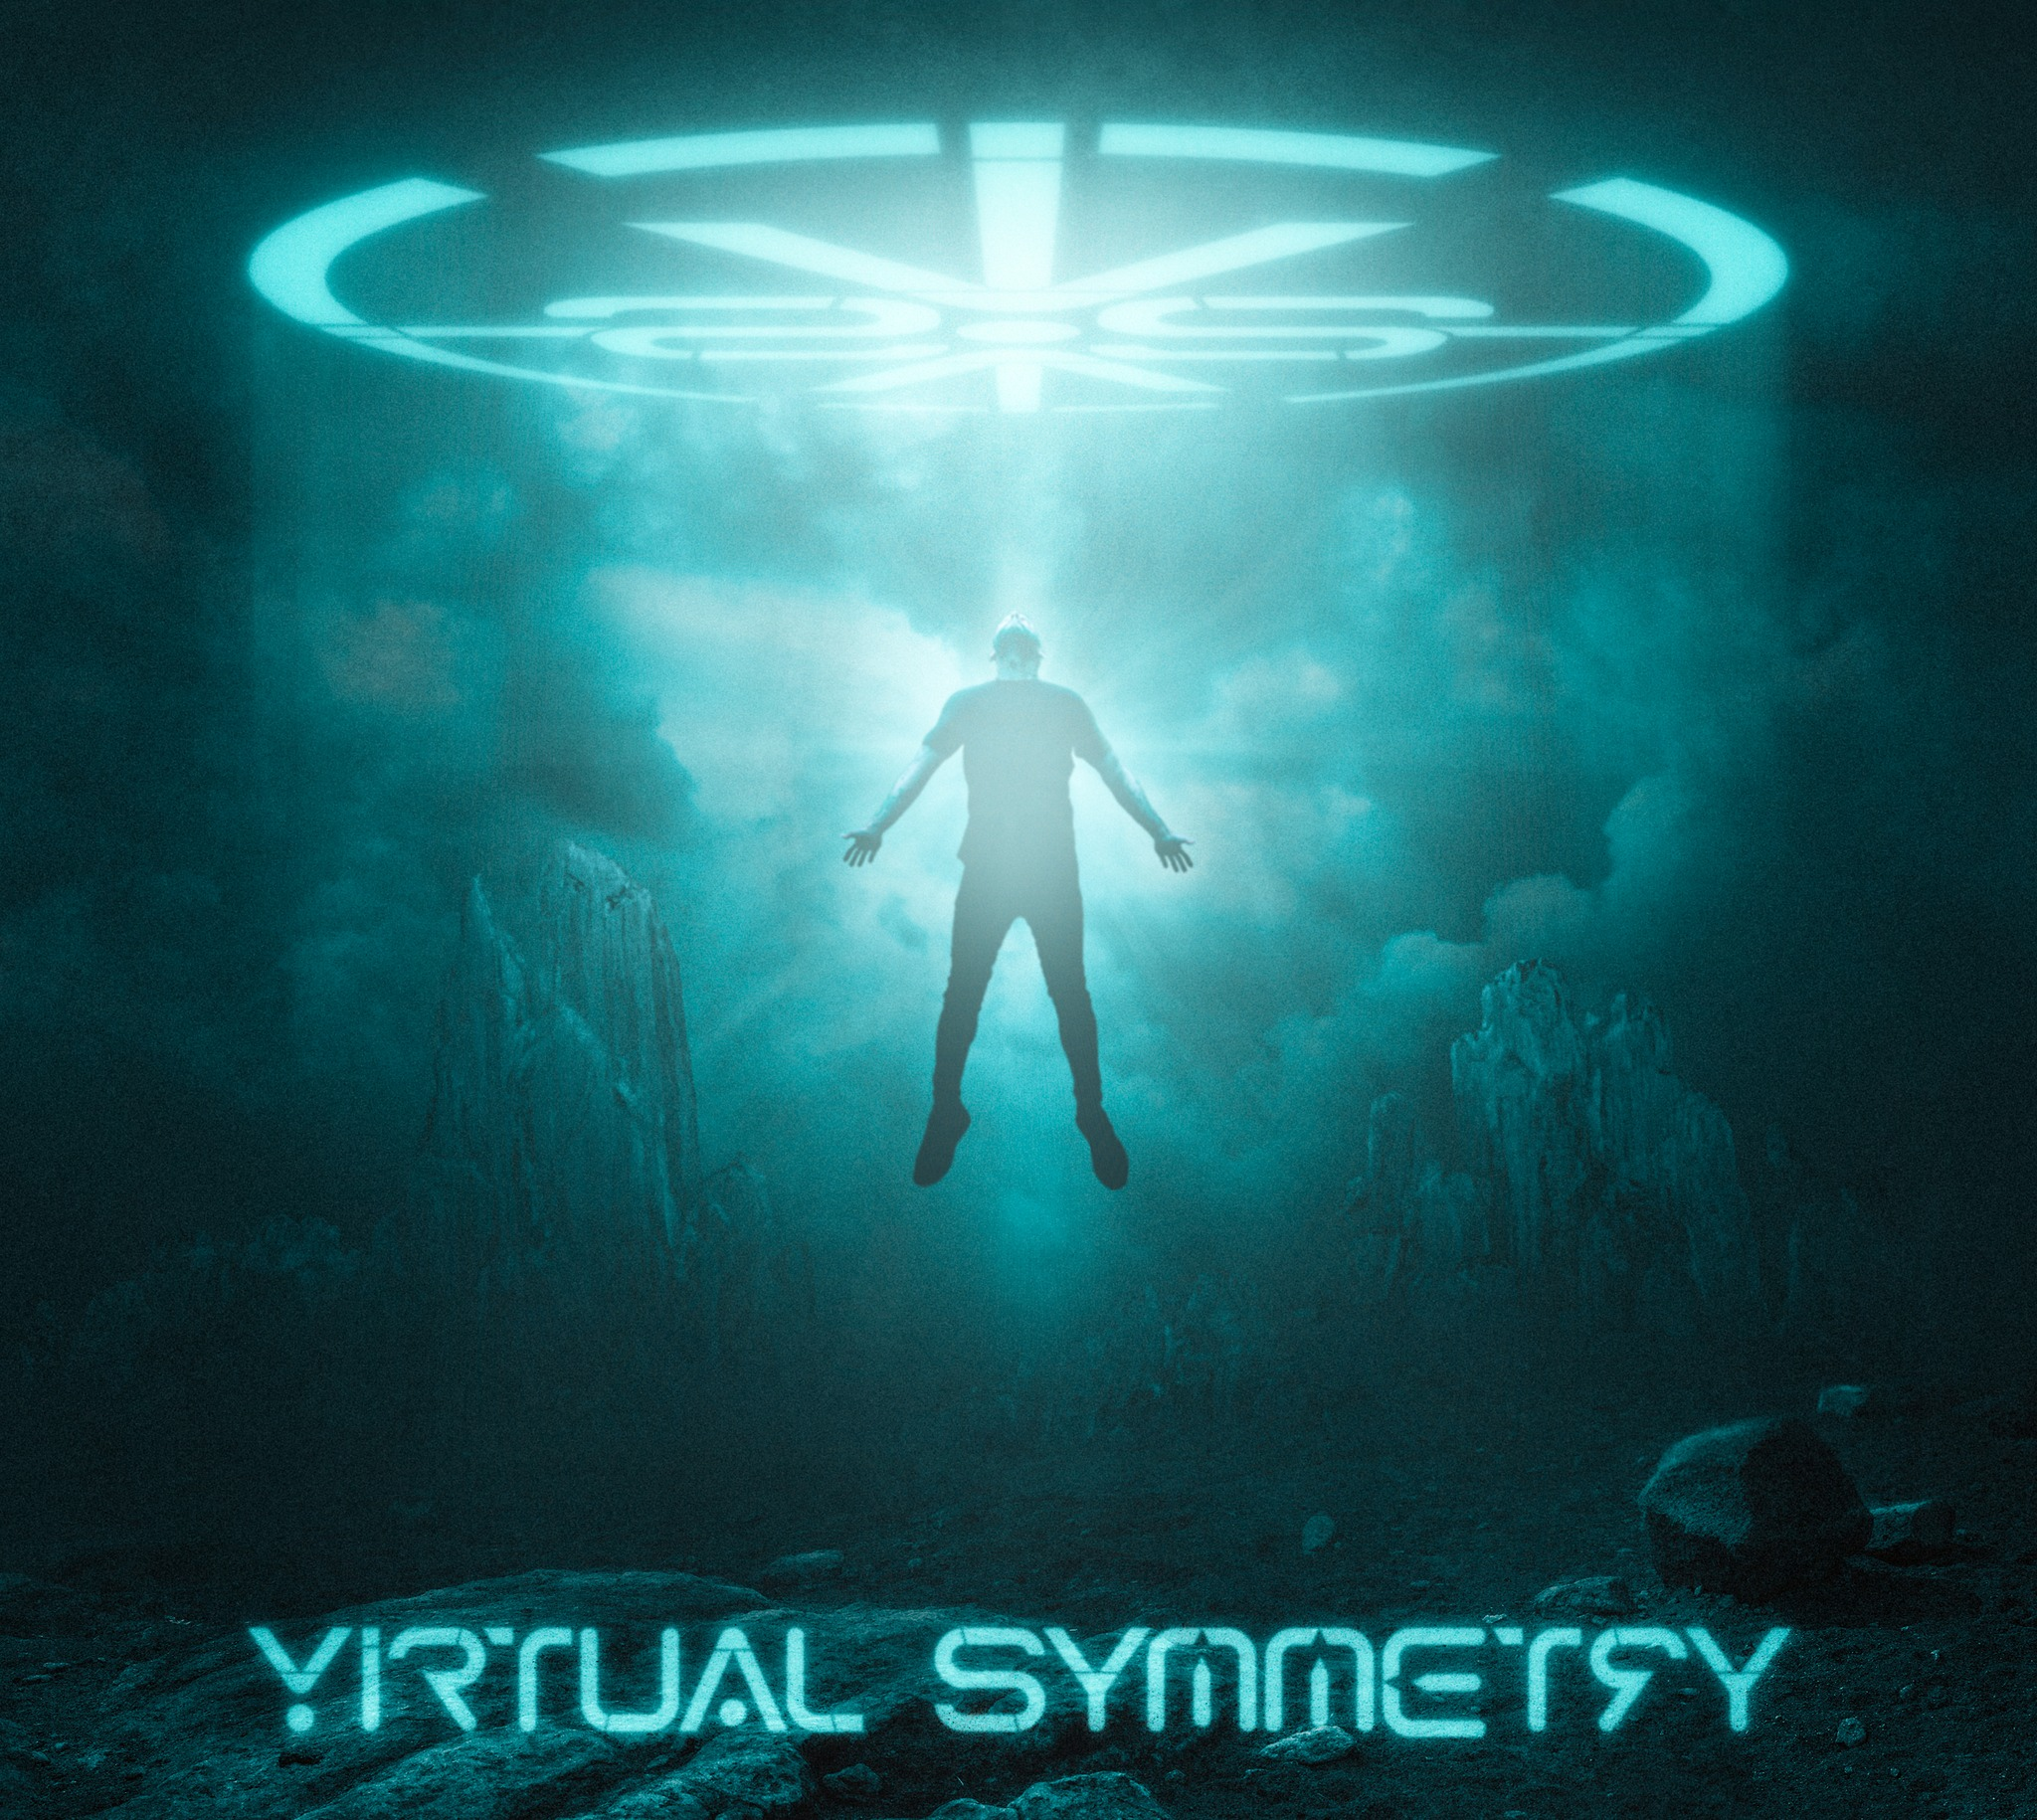 www.virtualsymmetry.com